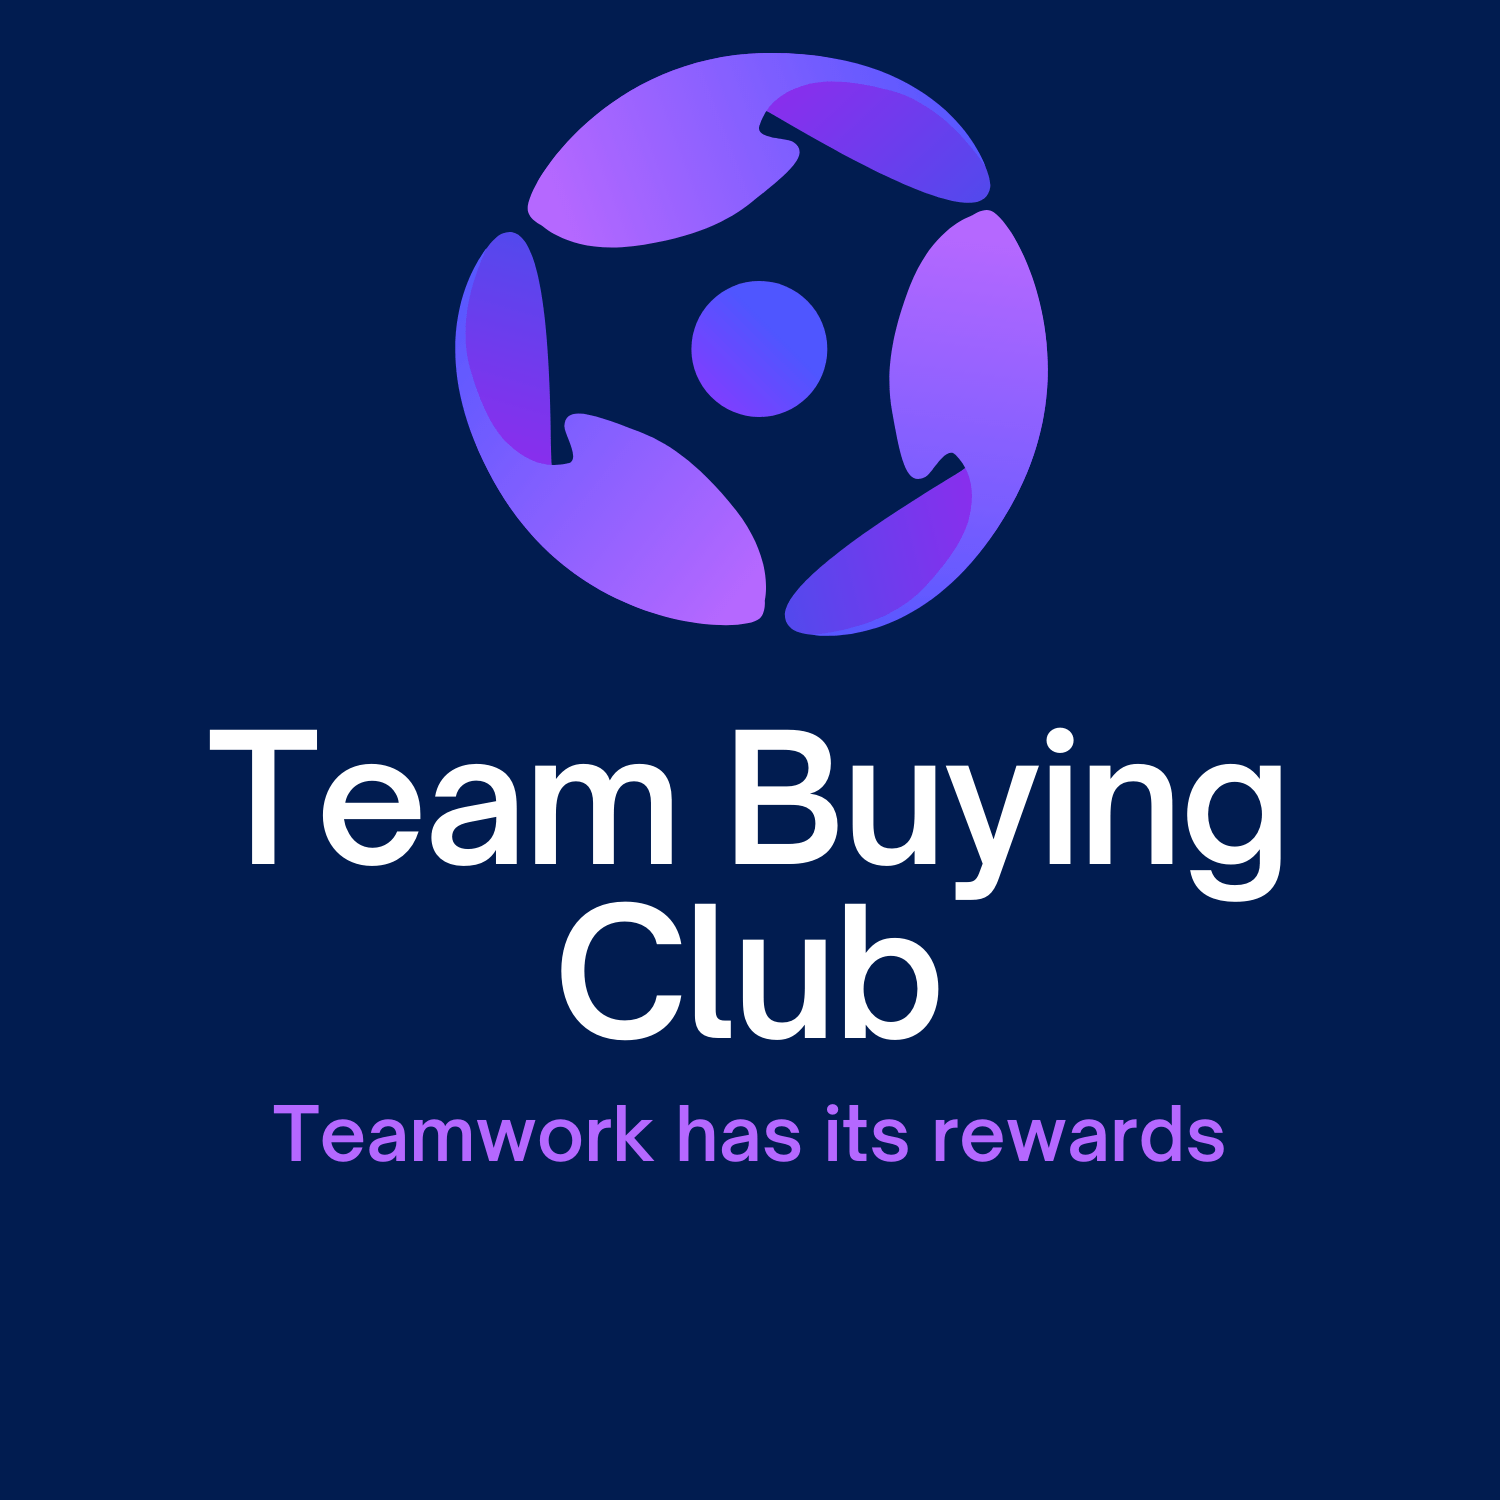 TeamBuying.Club